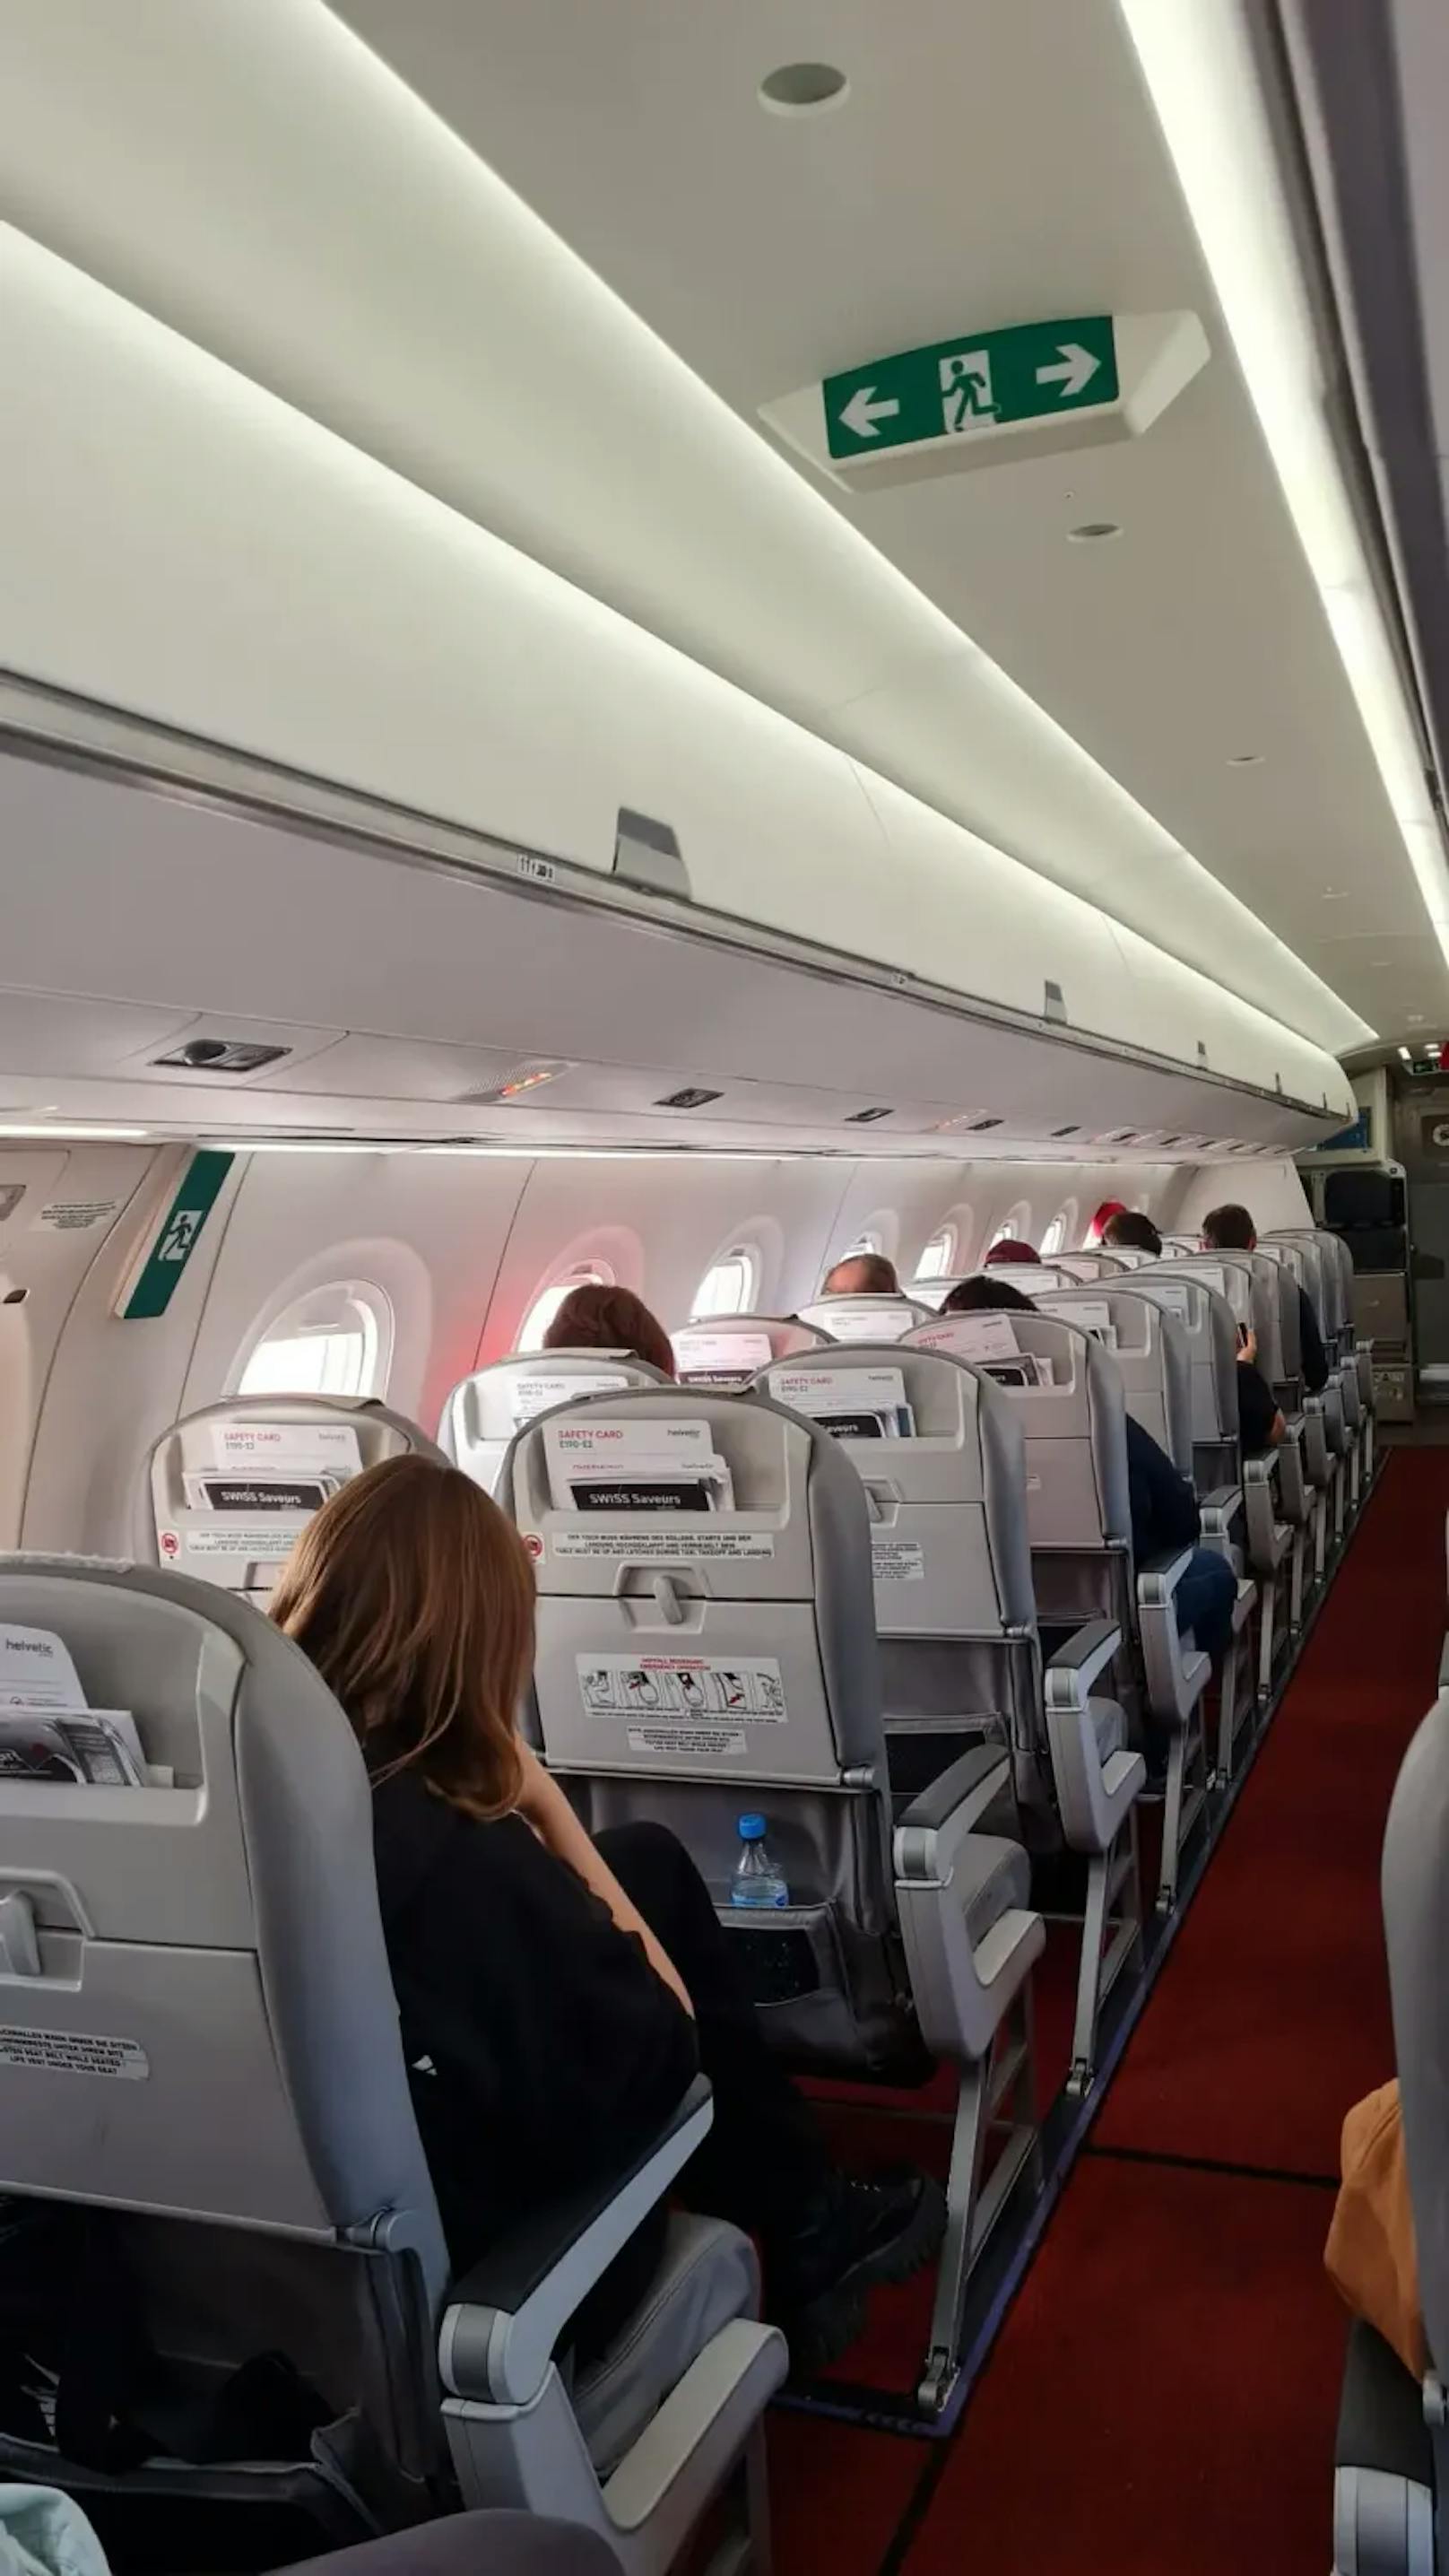 Freie Sitze, doch Airline lässt 12 Passagiere am Boden